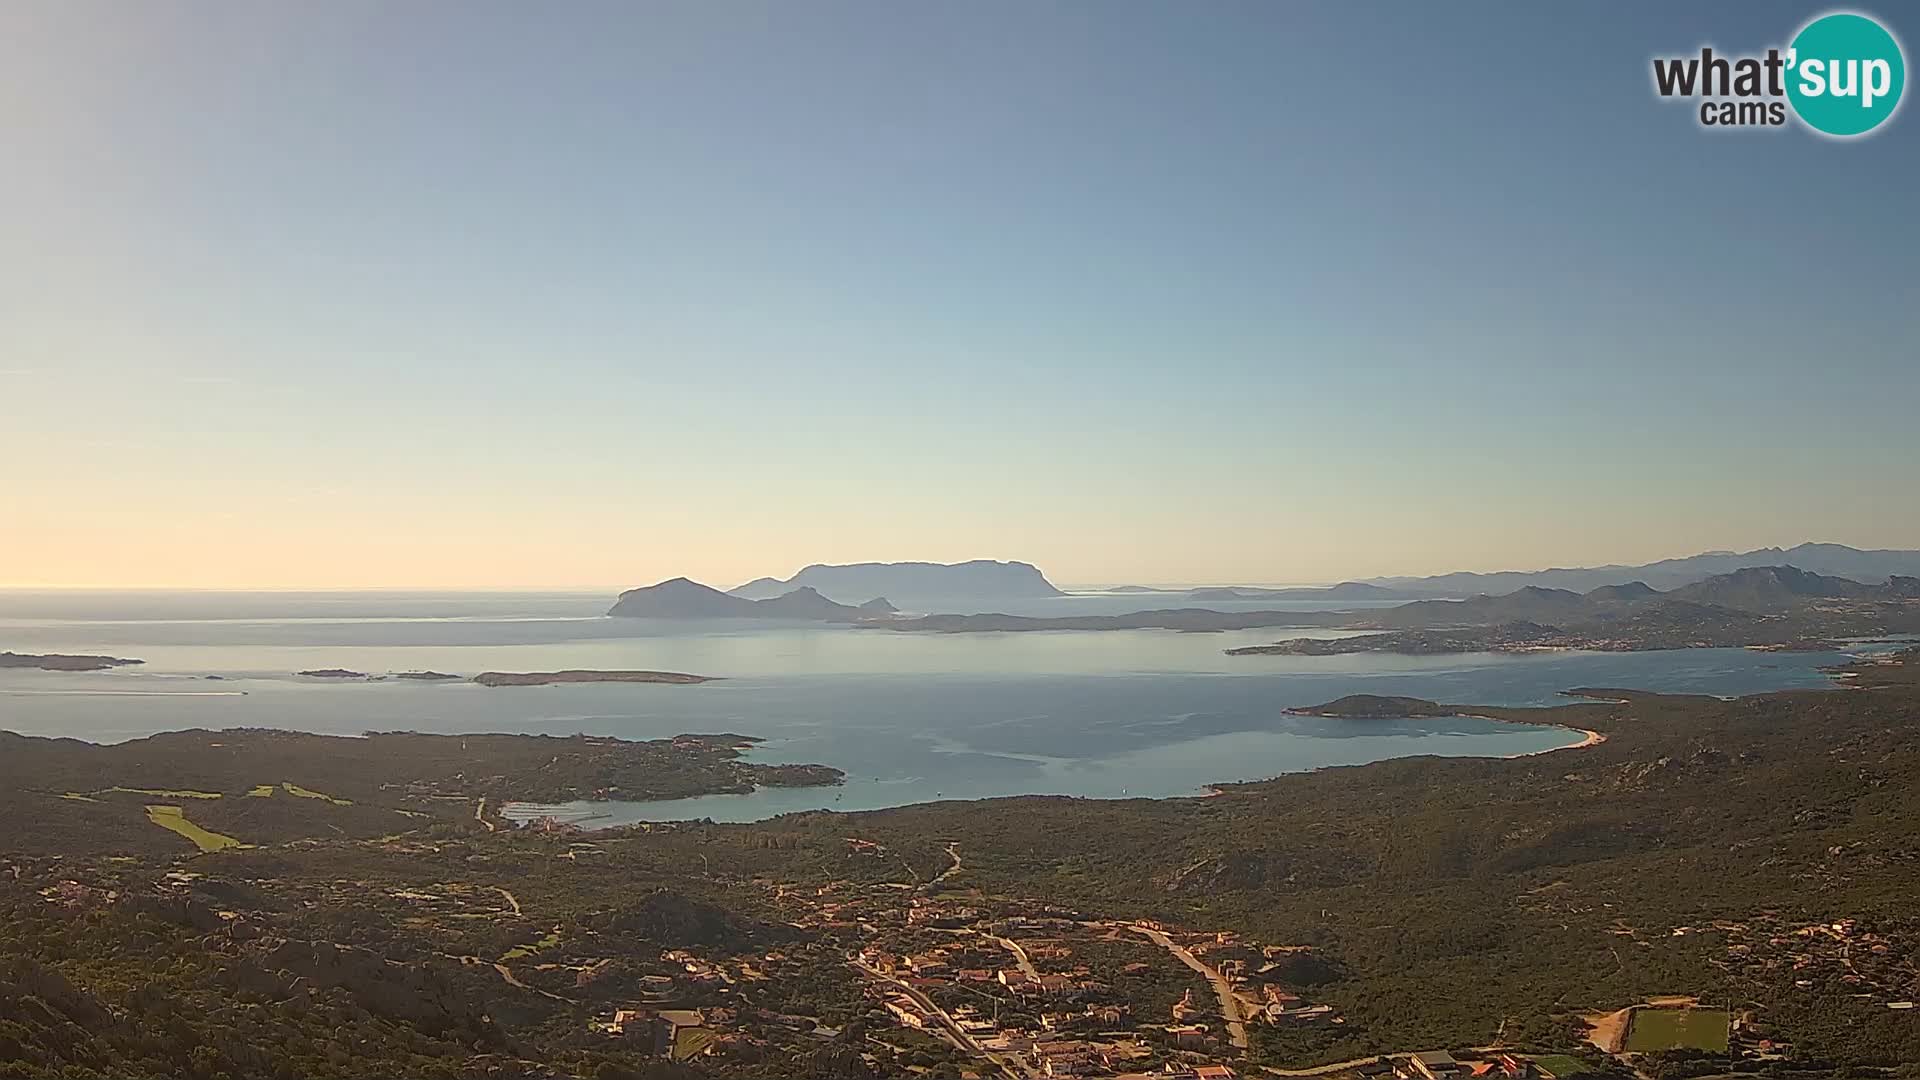 Monte Moro spletna kamera Costa Smeralda panoramski pogled na Sardinijo